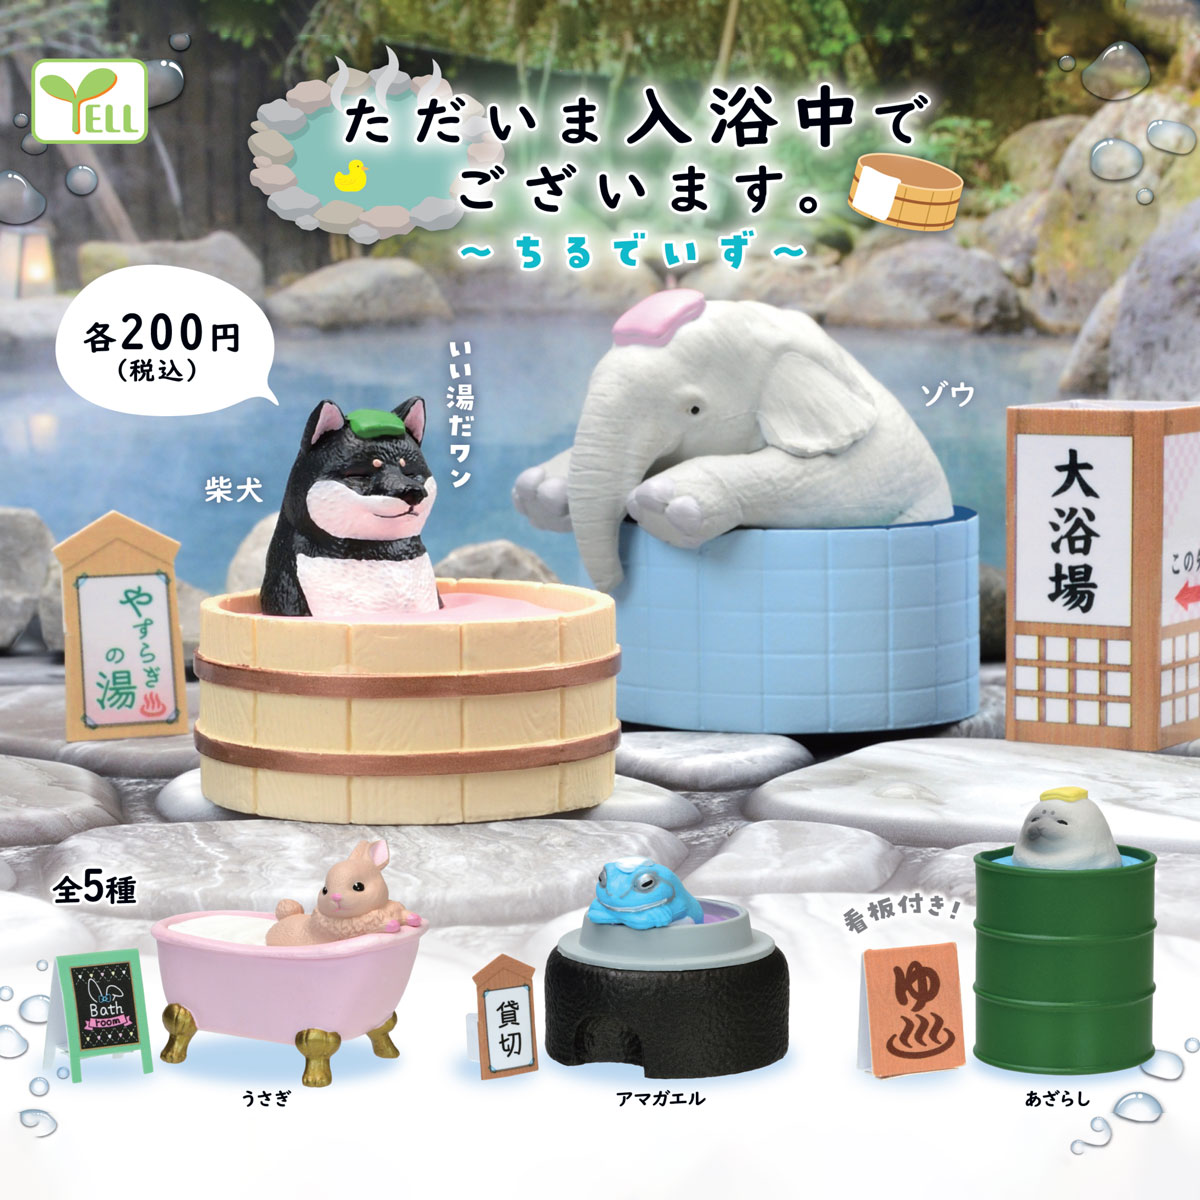 可爱Yell日本扭蛋手办玩具我们正在入浴中寒冷天气泡澡堂洗澡动物